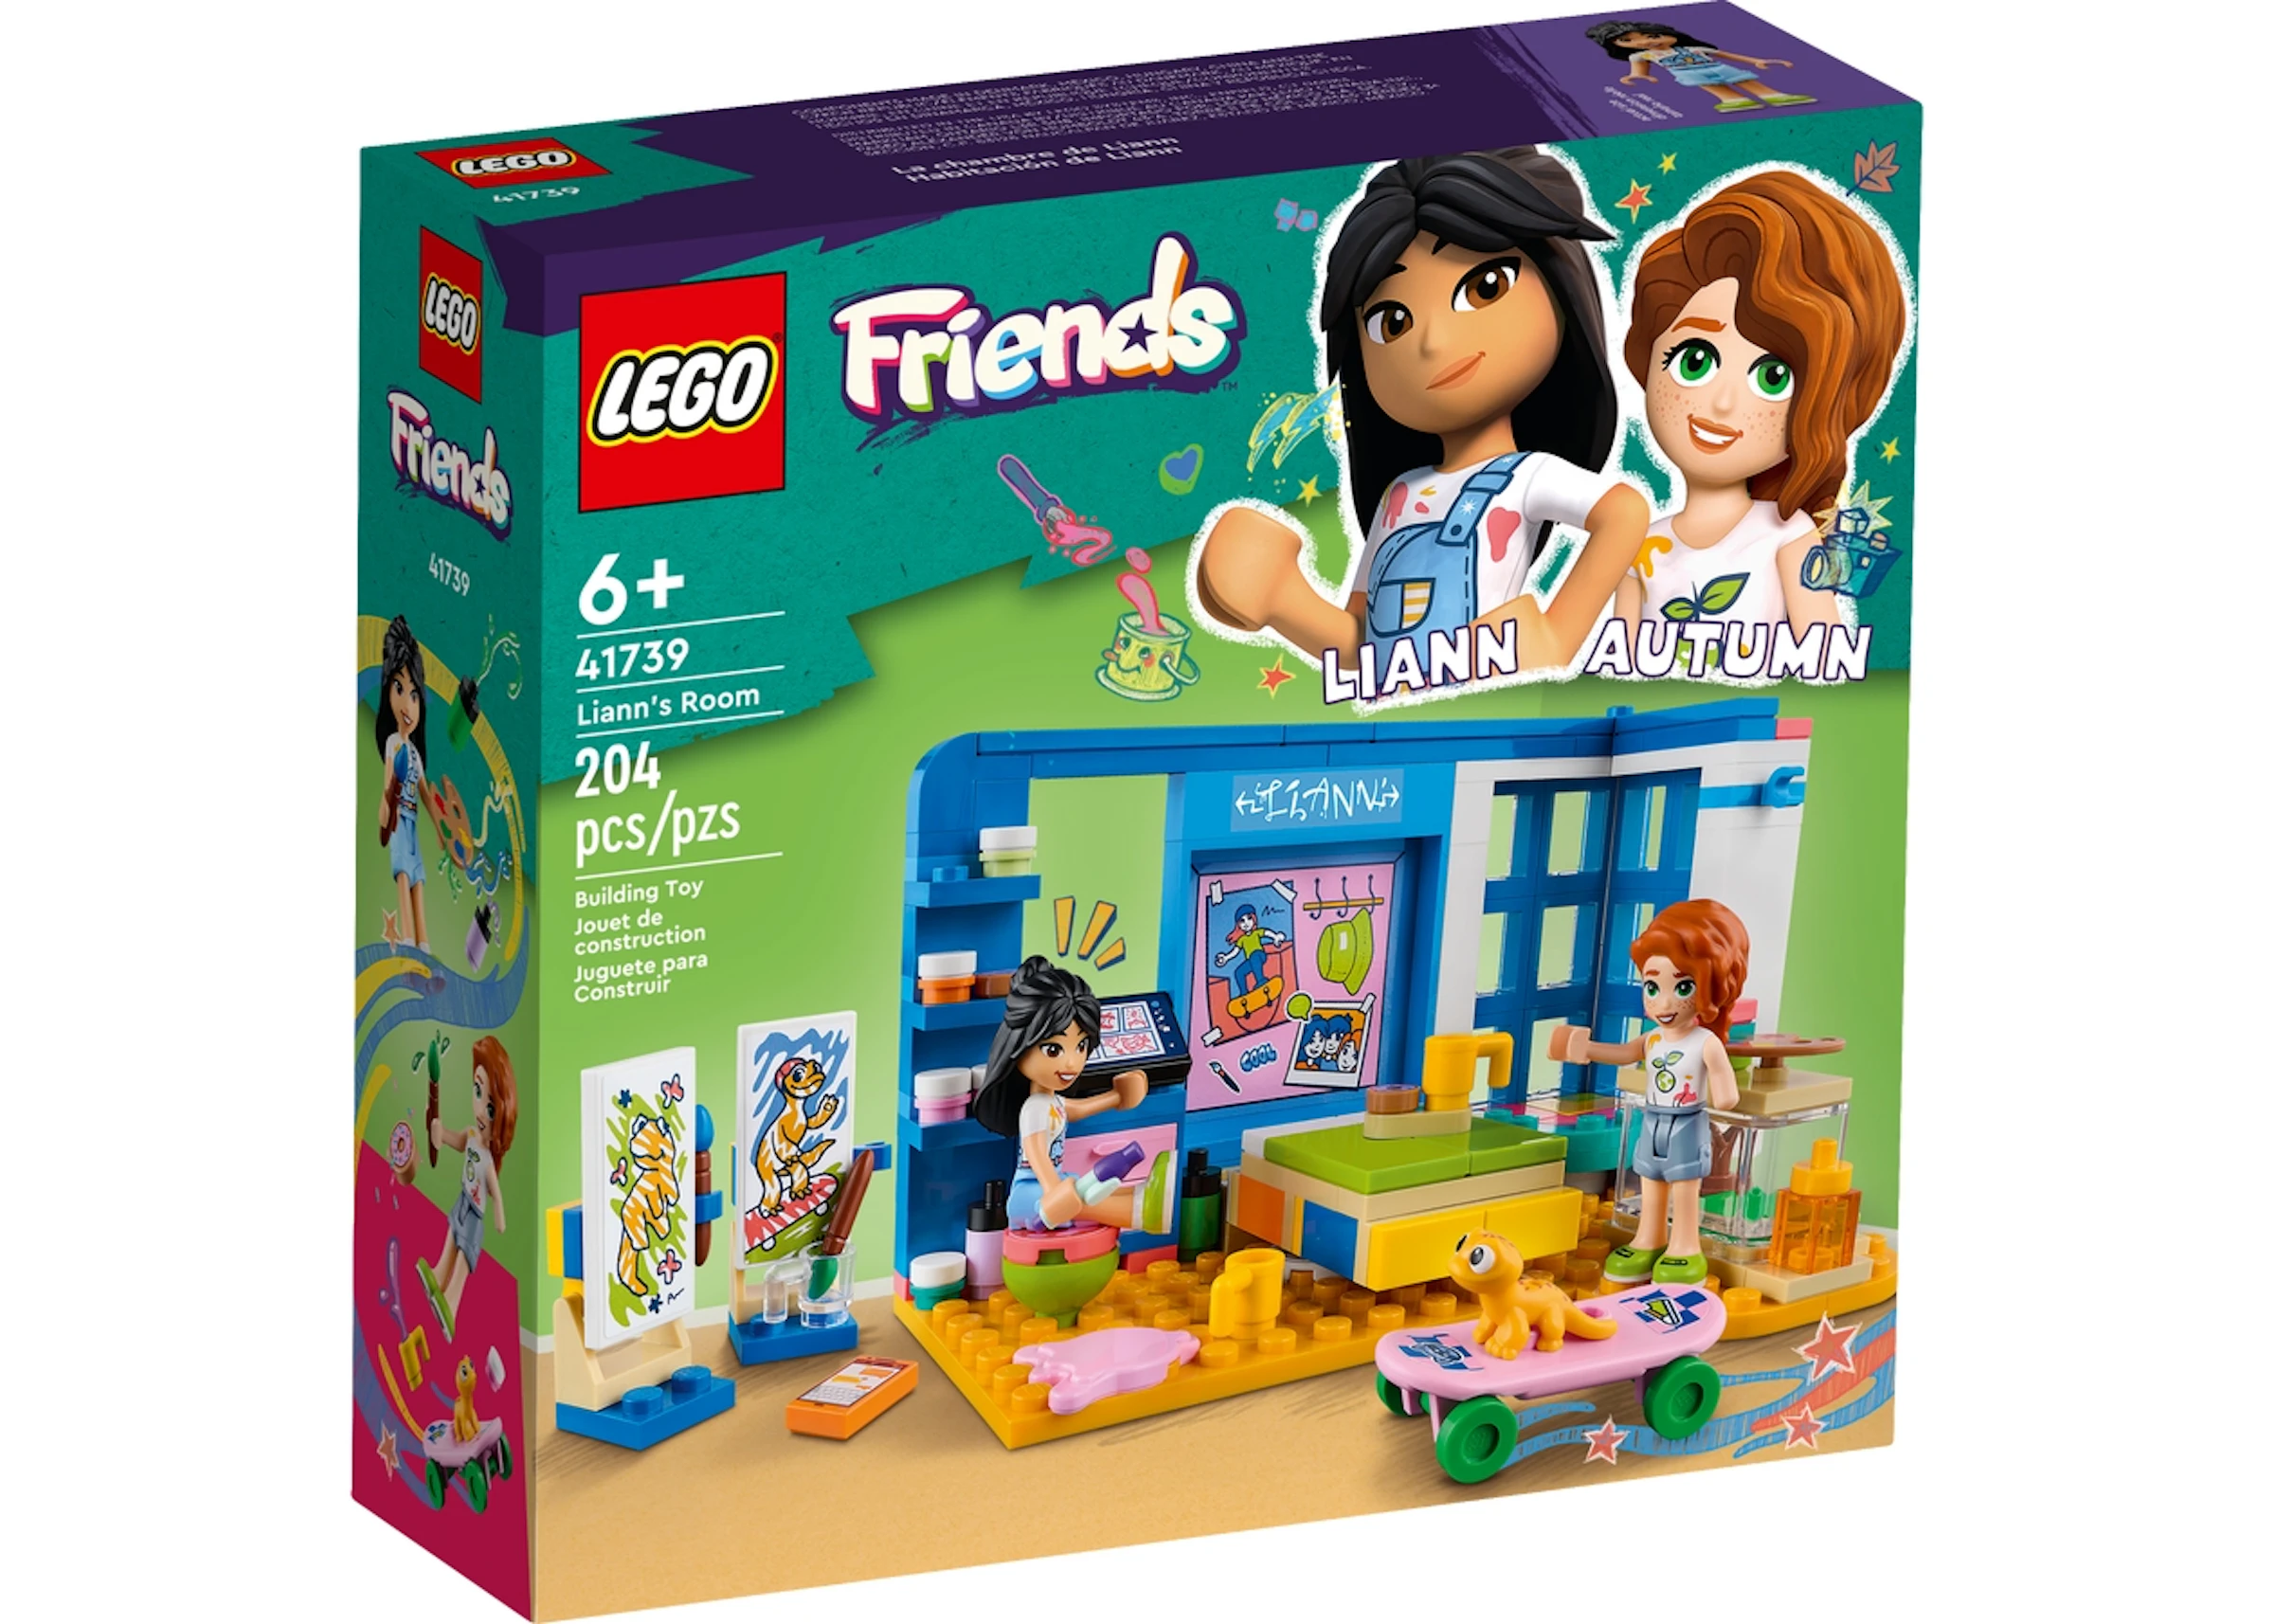 LEGO Friends Liann's Room Set 41739